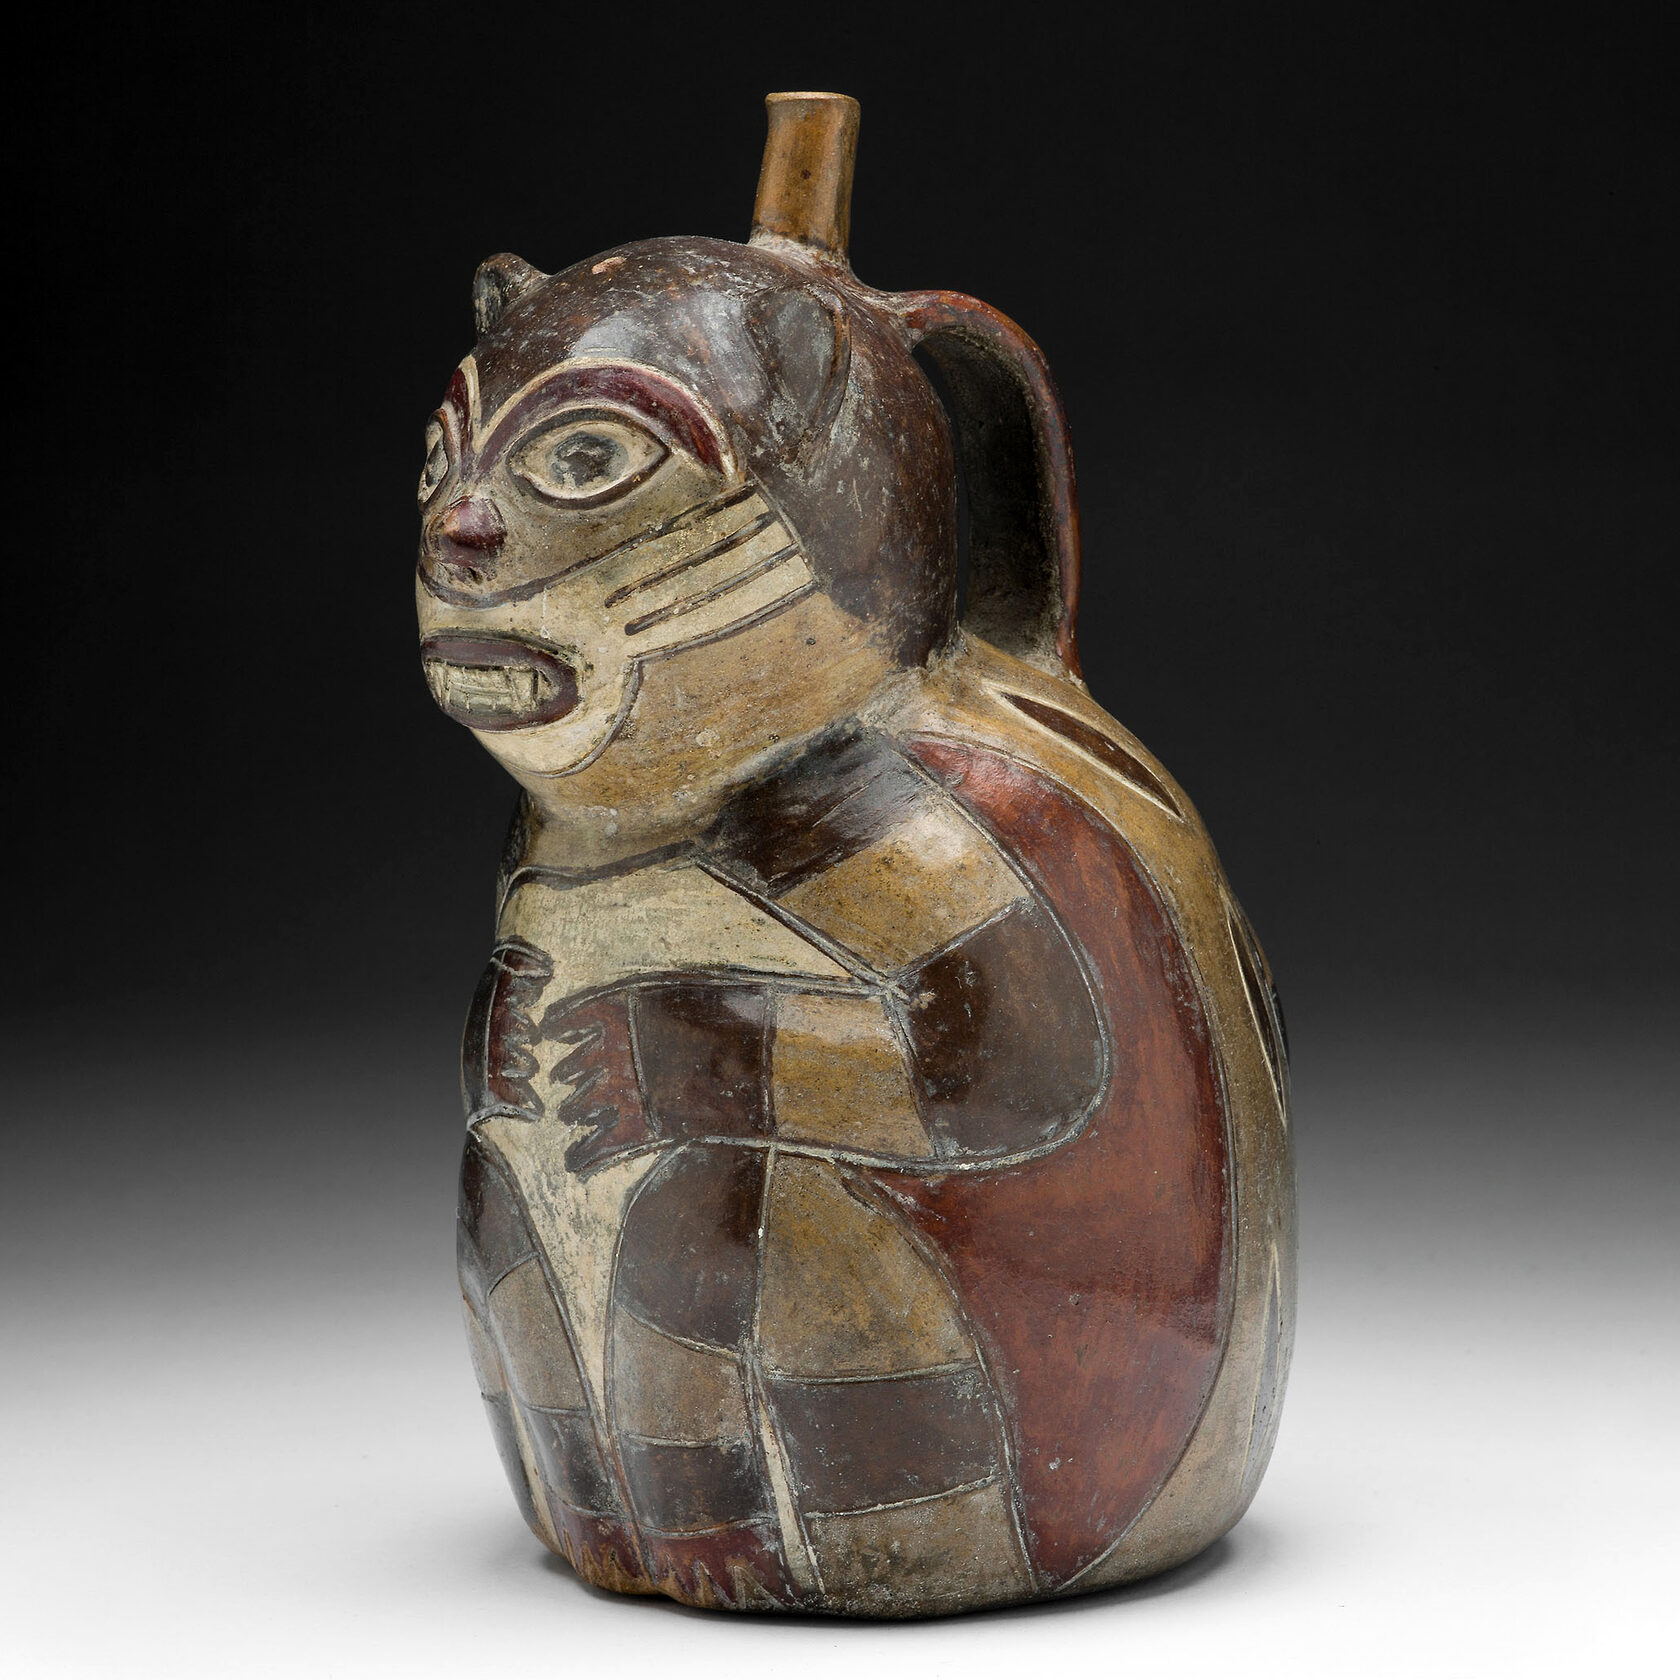 Сосуд в форме пампасской кошки. Наска, 180 г. до н.э. - 500 г. н.э. Коллекция Art Institute of Chicago.